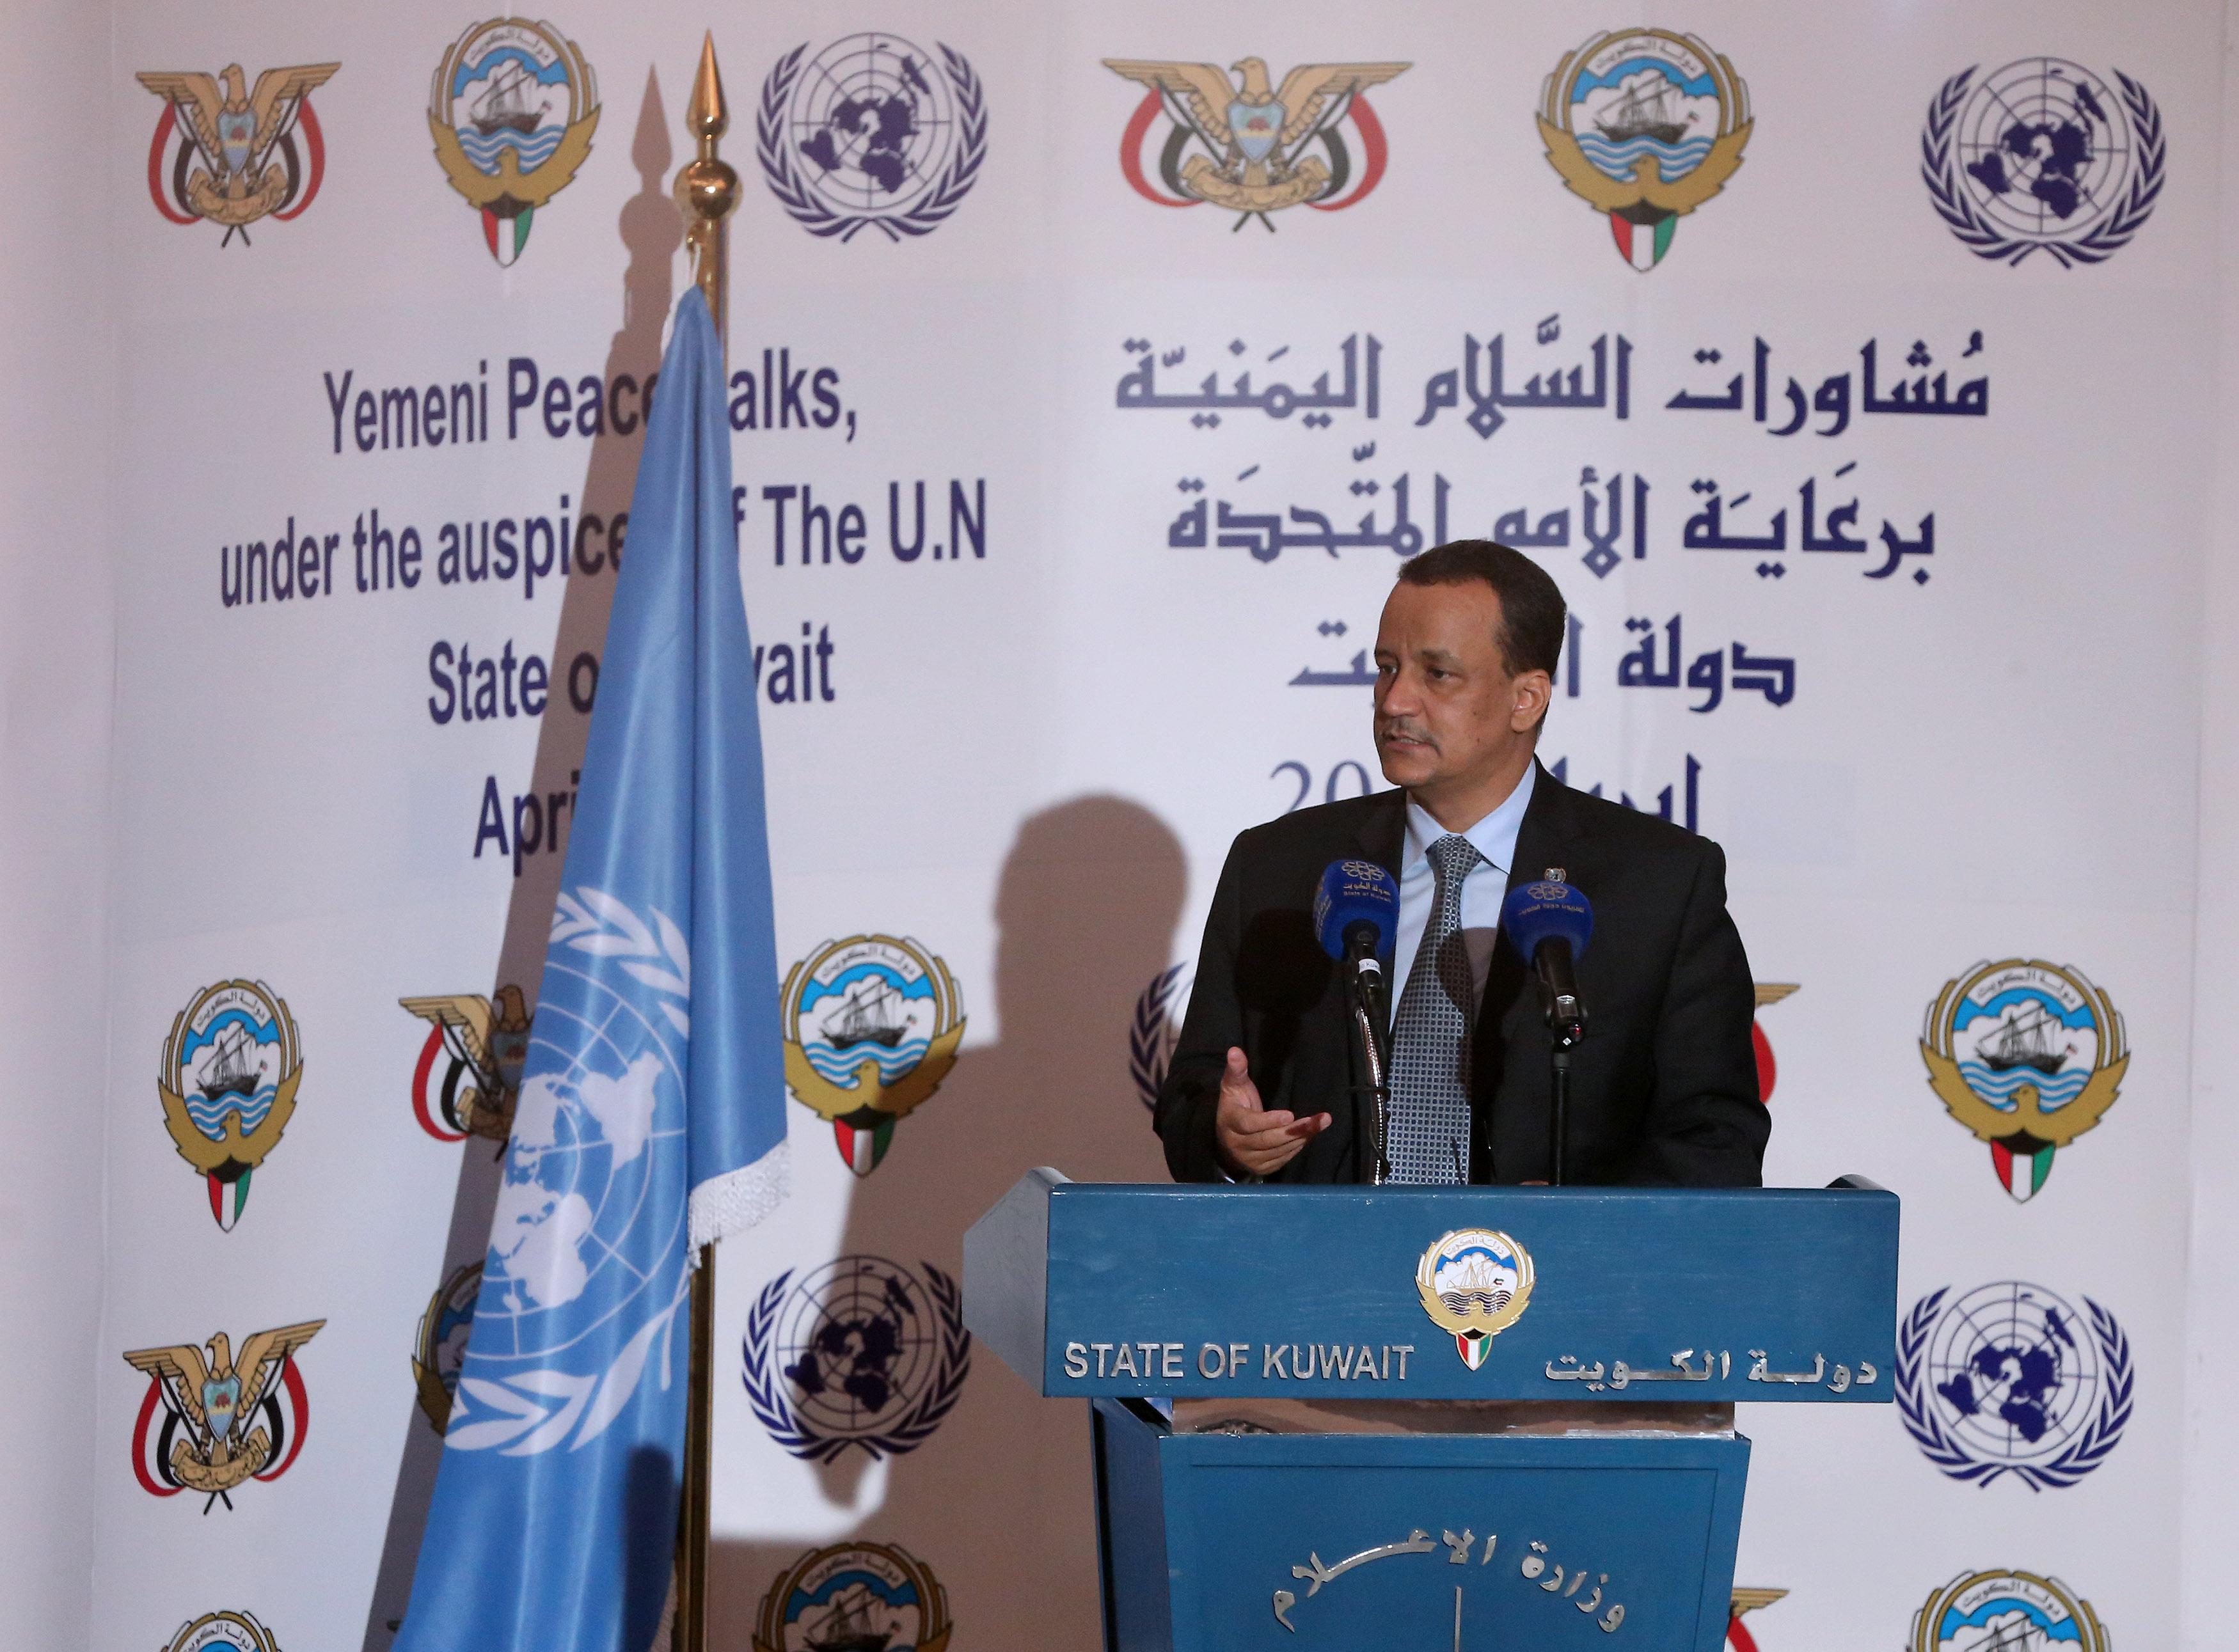 مبعوث الامم المتحدة الى اليمن اسماعيل ولد الشيخ احمد